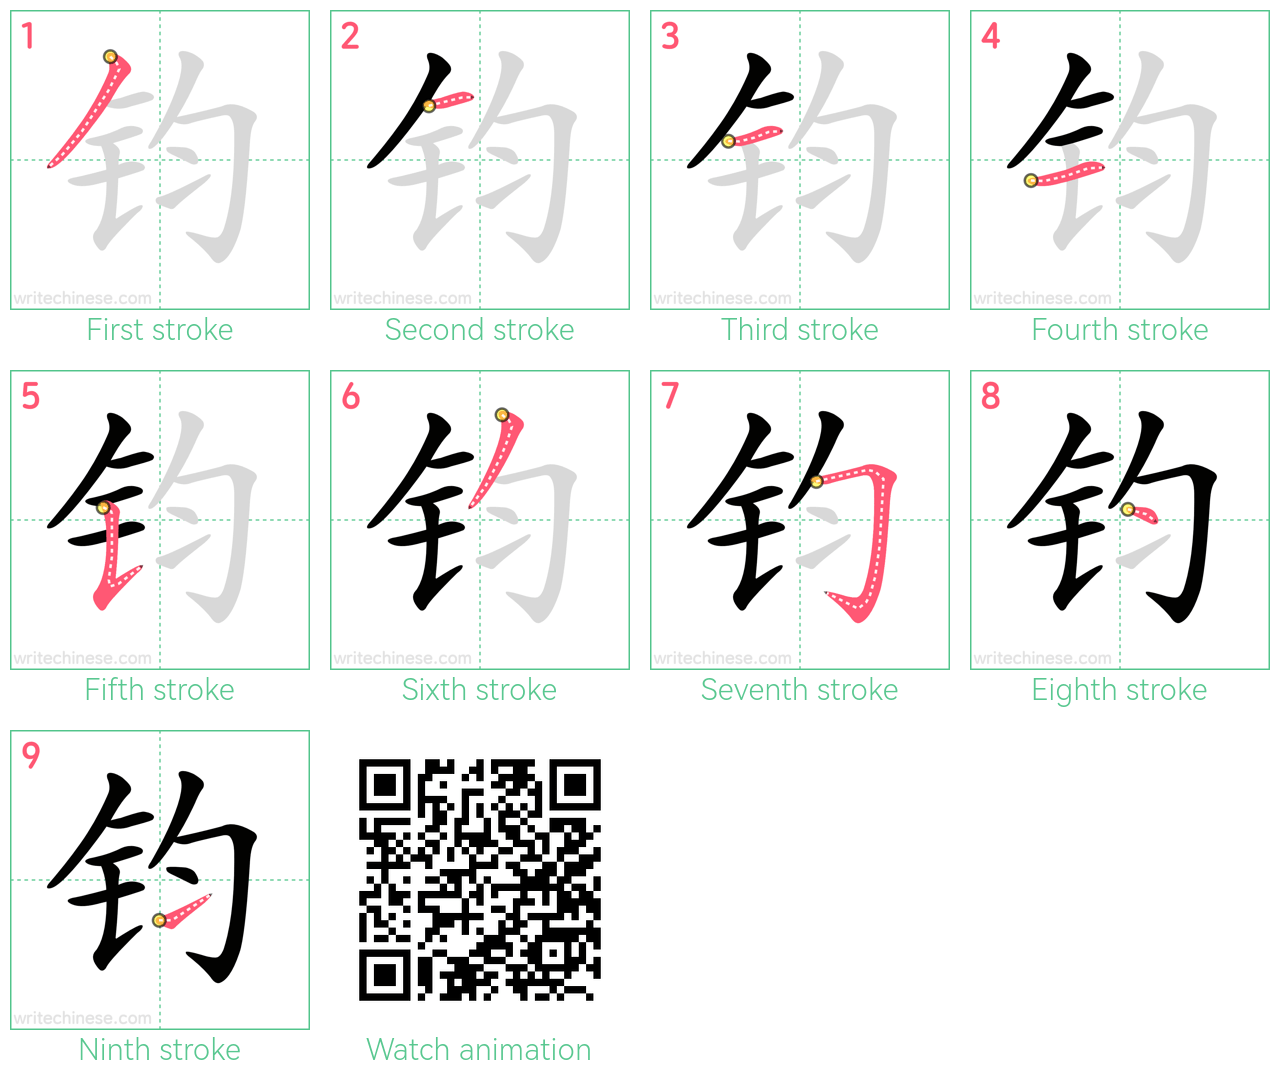 钧 step-by-step stroke order diagrams